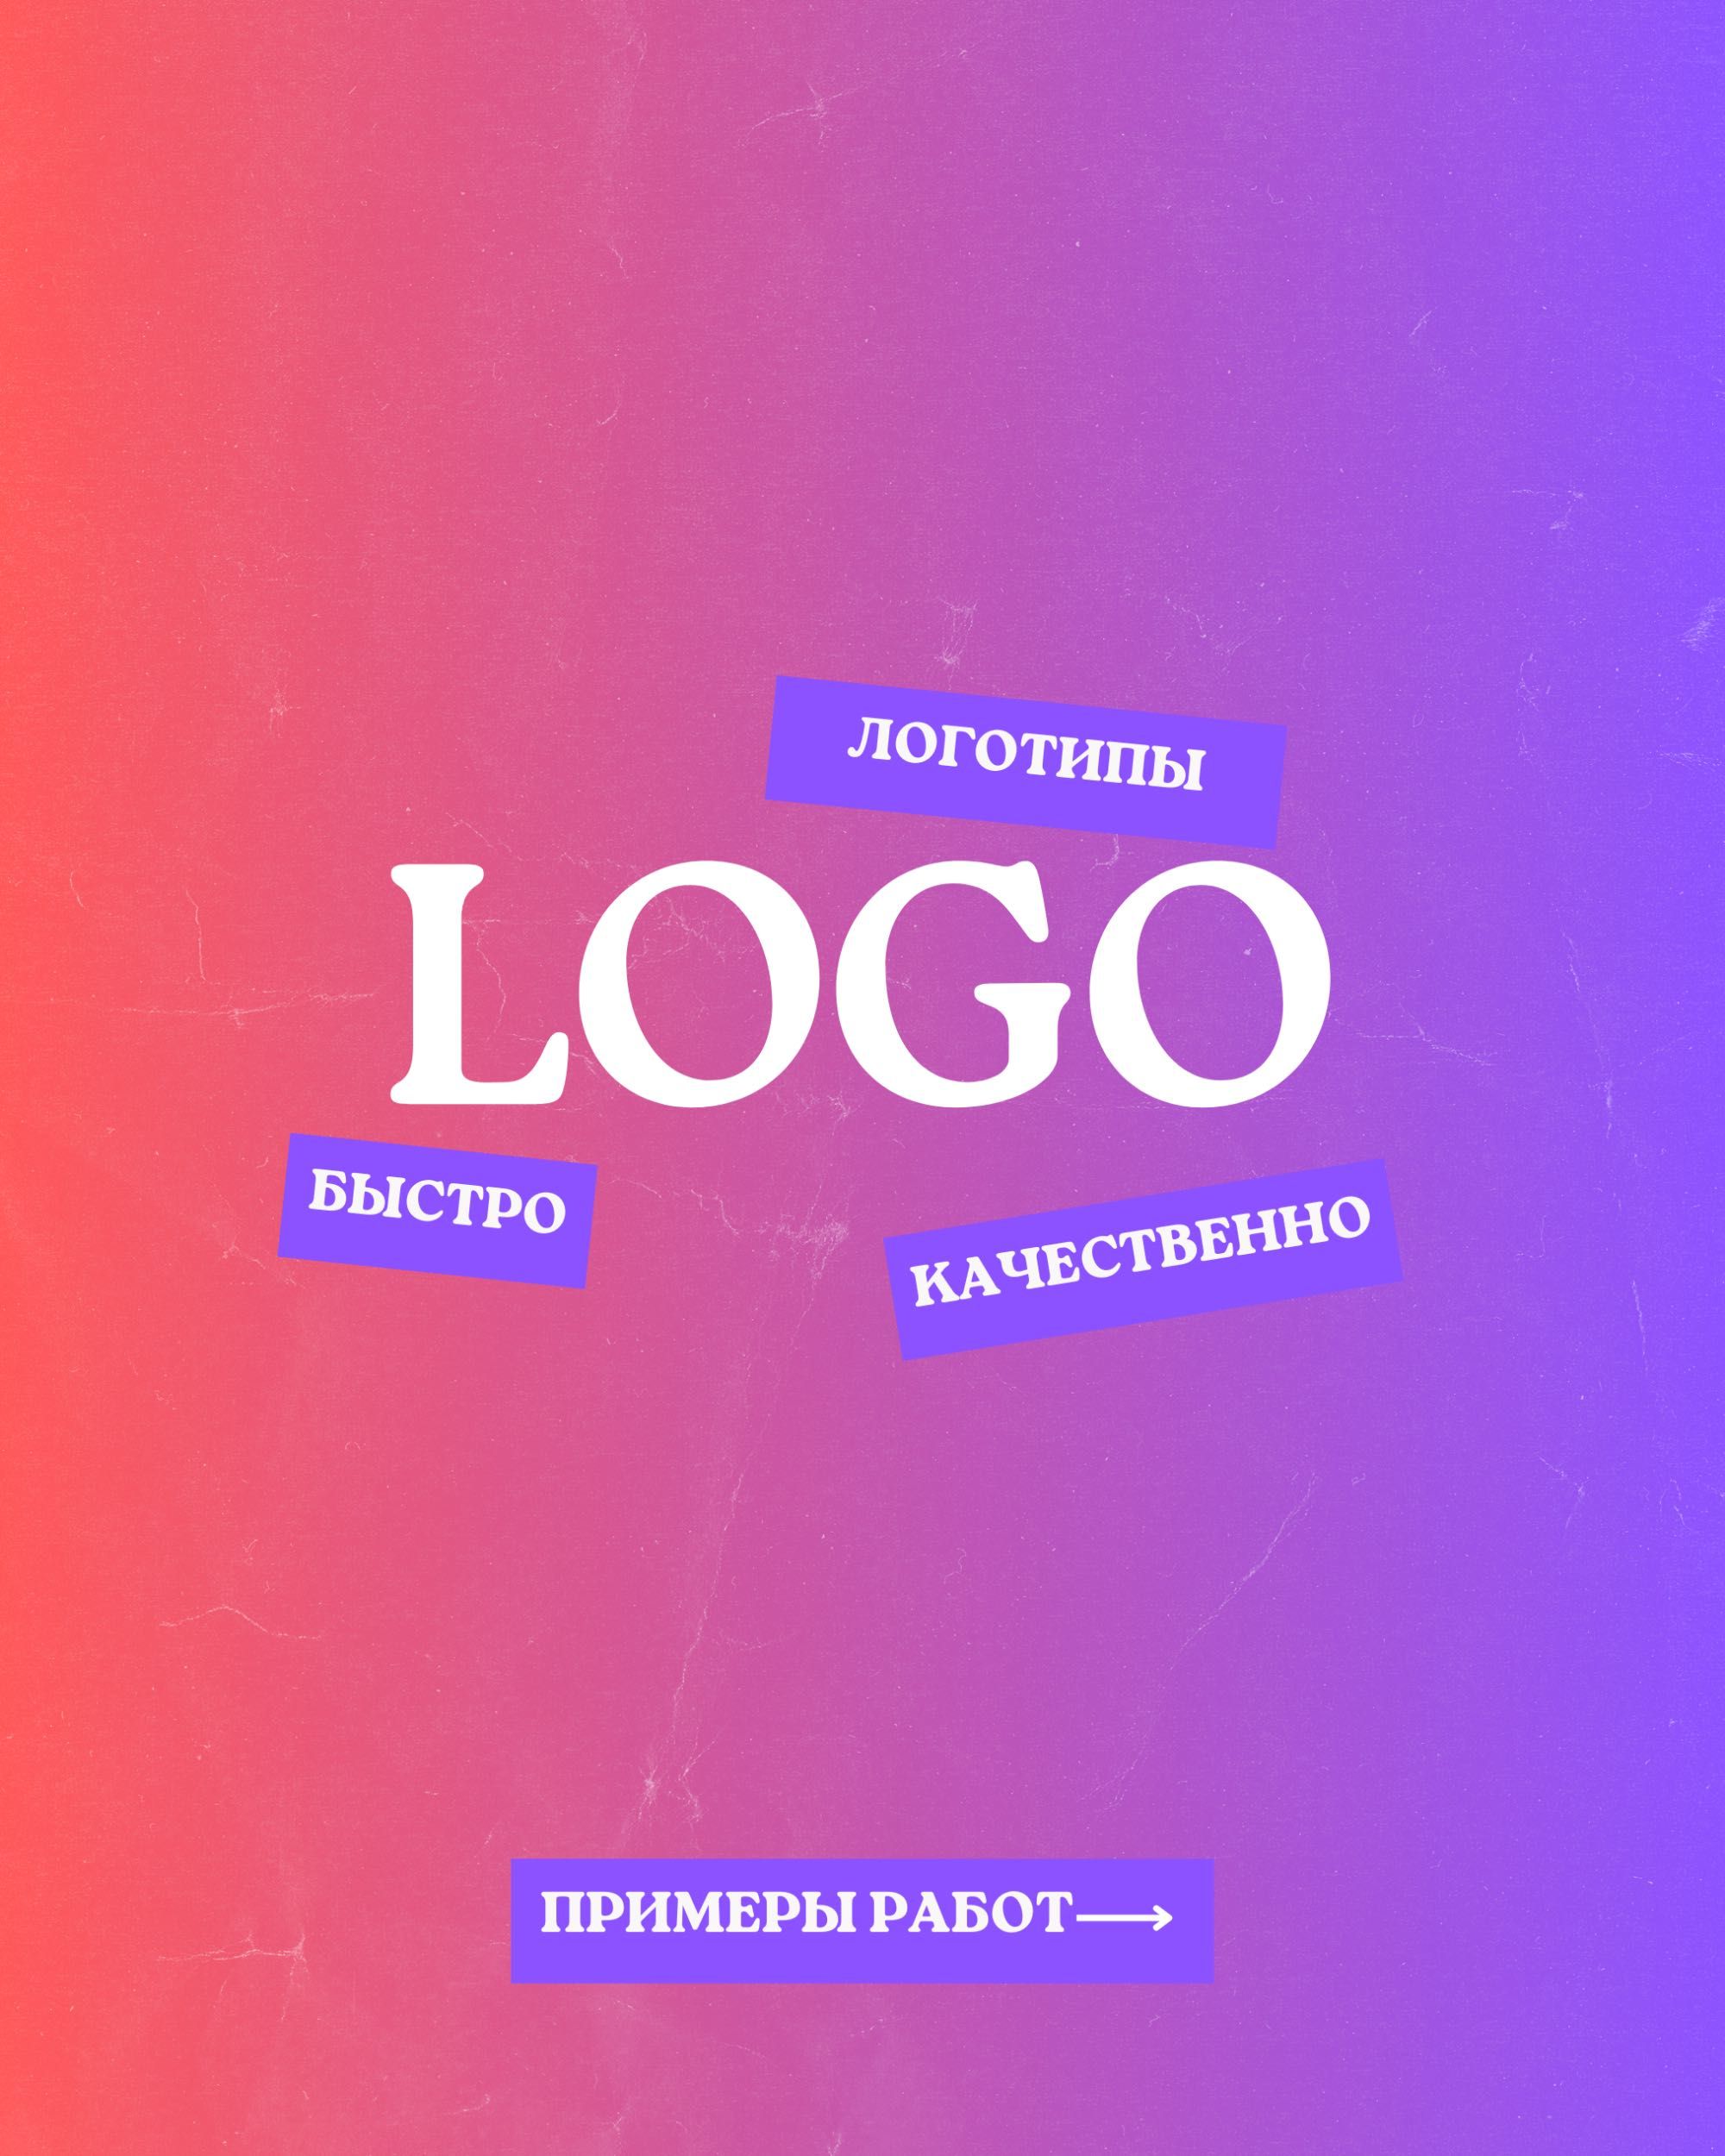 Разработка логотипа, логотип, графический дизайн, лого